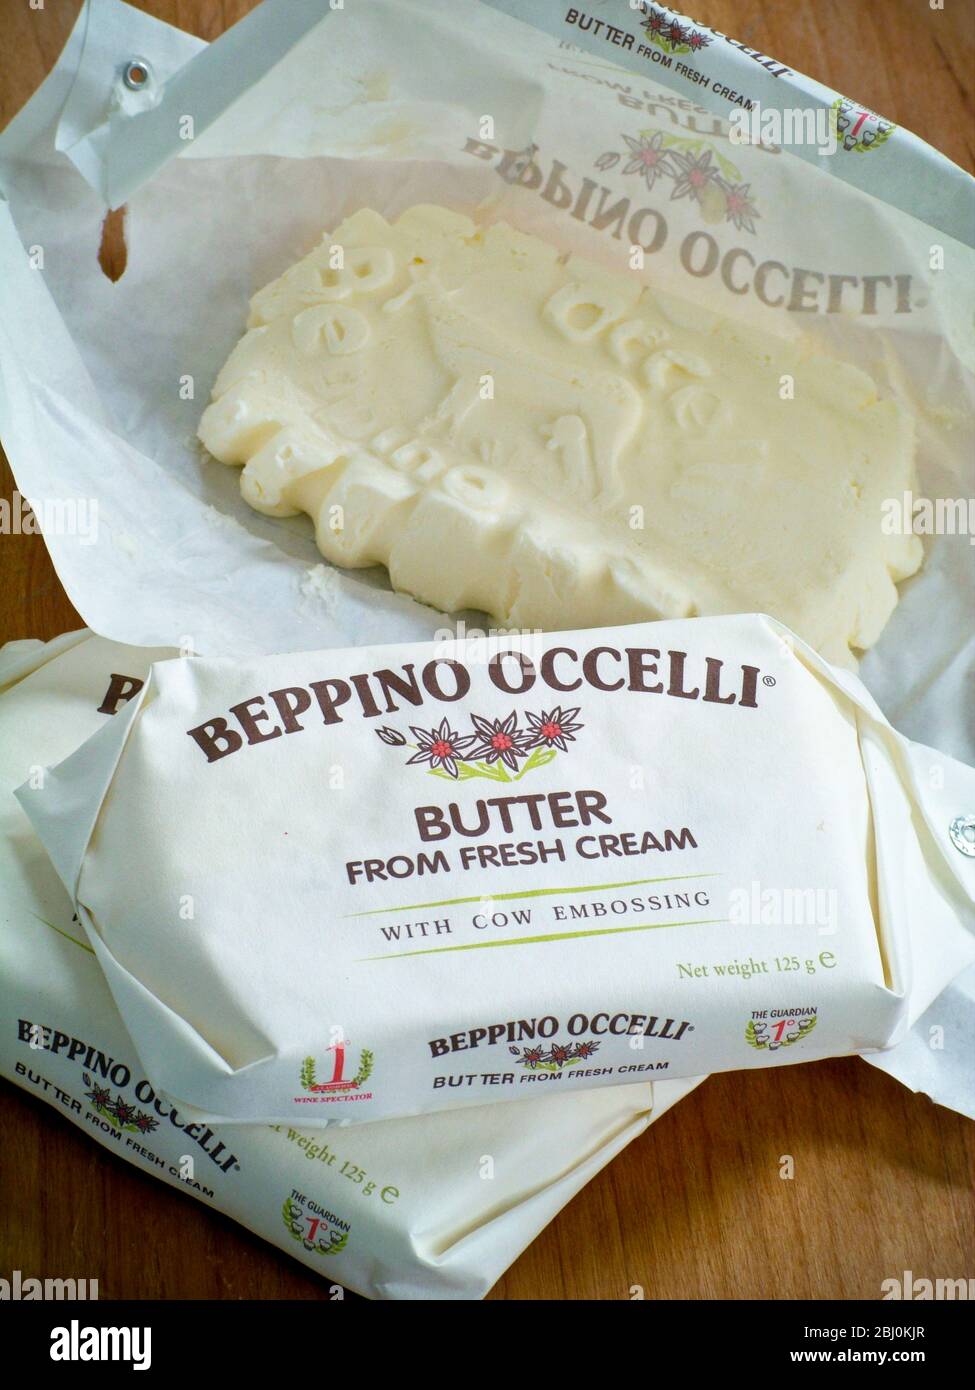 Beppino Occelli Italienische Butter in und aus der Verpackung gezeigt und zeigt die Reliefpaterne der geprägten Kuh. - Stockfoto